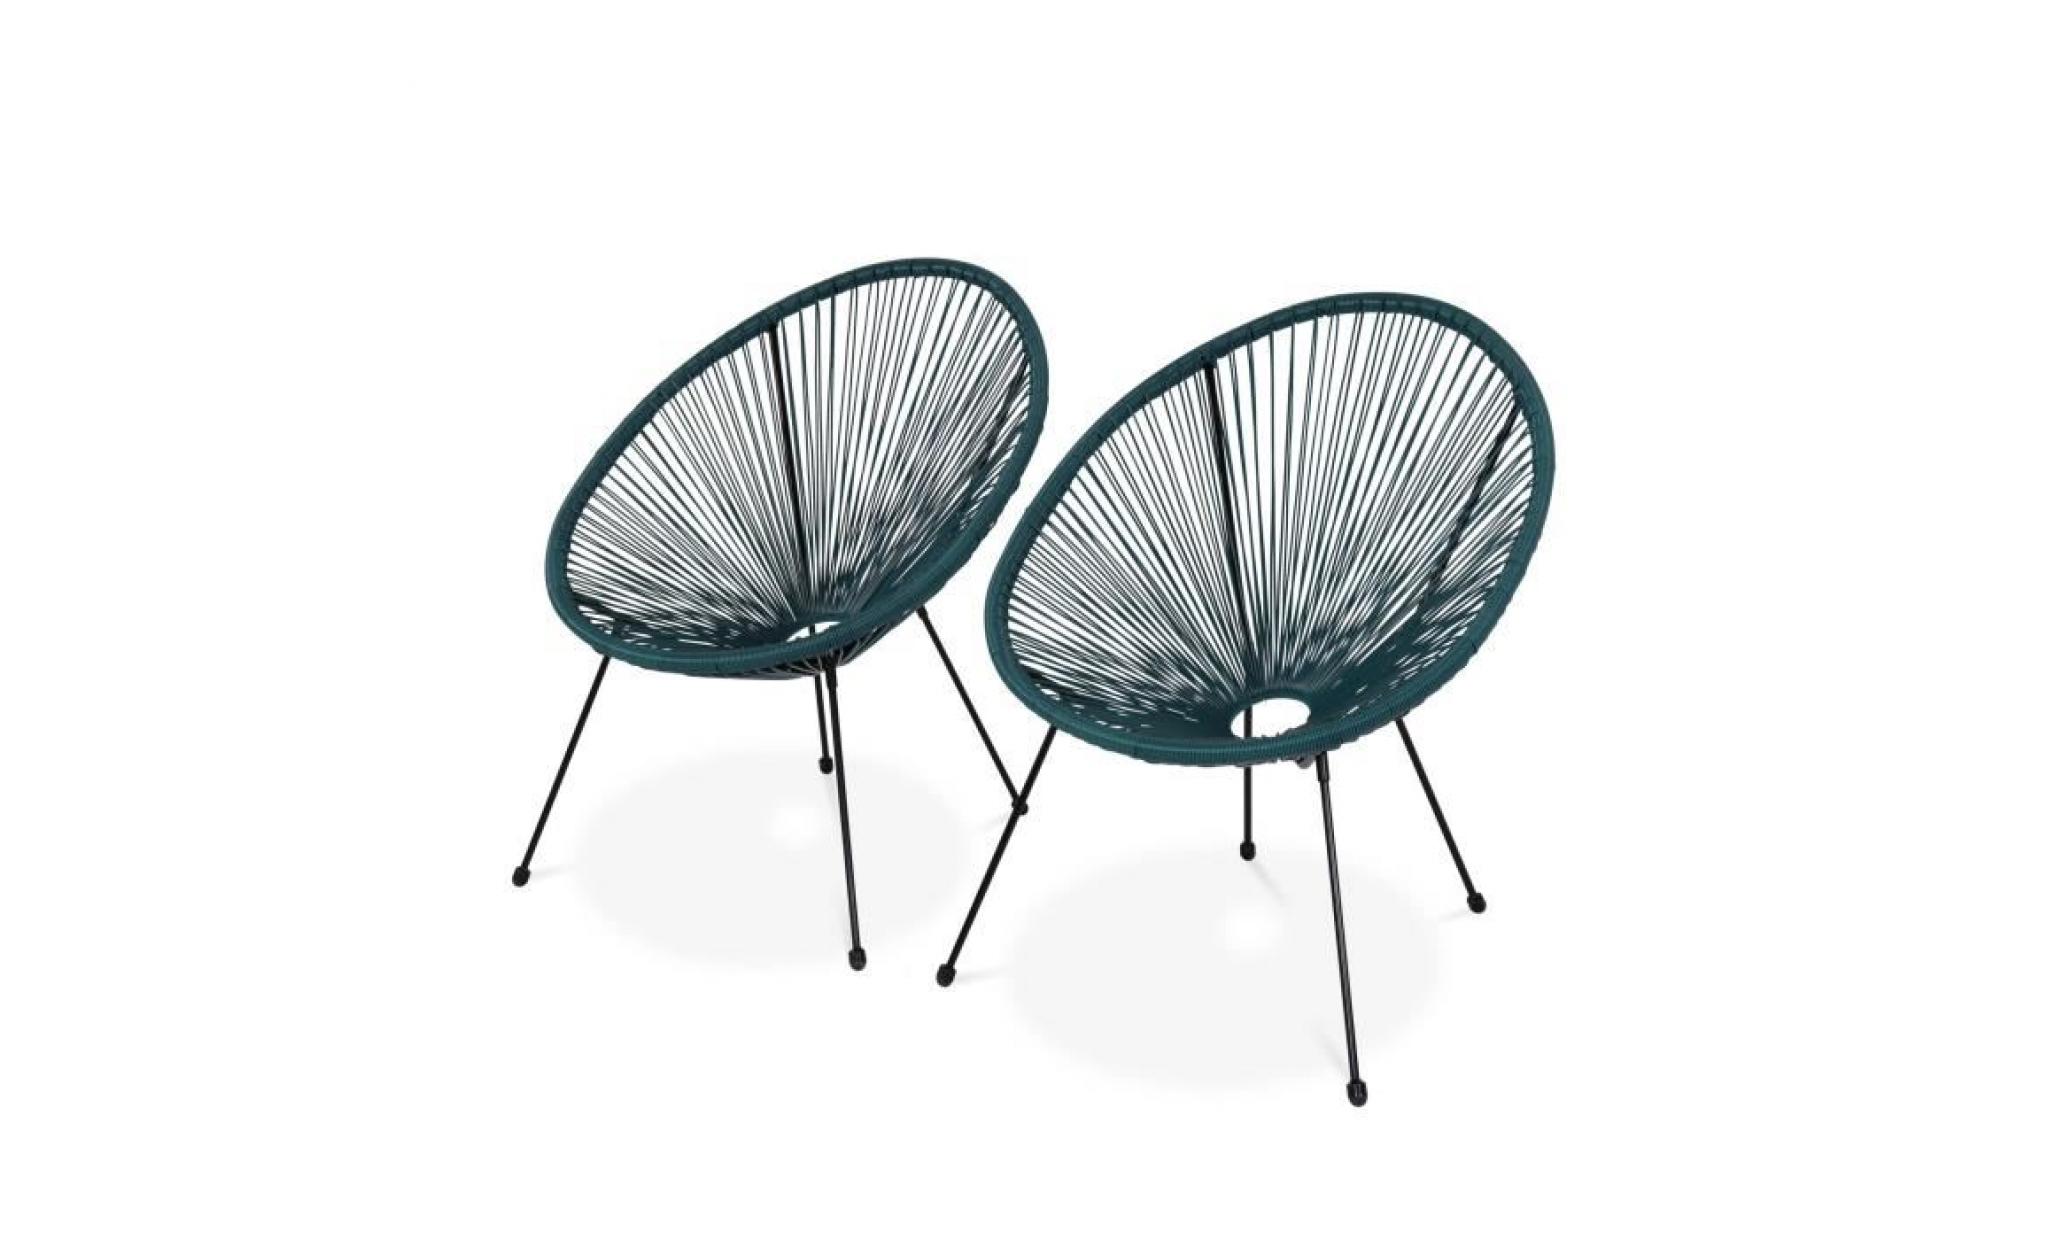 lot de 2 fauteuils design oeuf   acapulco bleu canard   fauteuils 4 pieds design rétro, cordage plastique, intérieur / extérieur